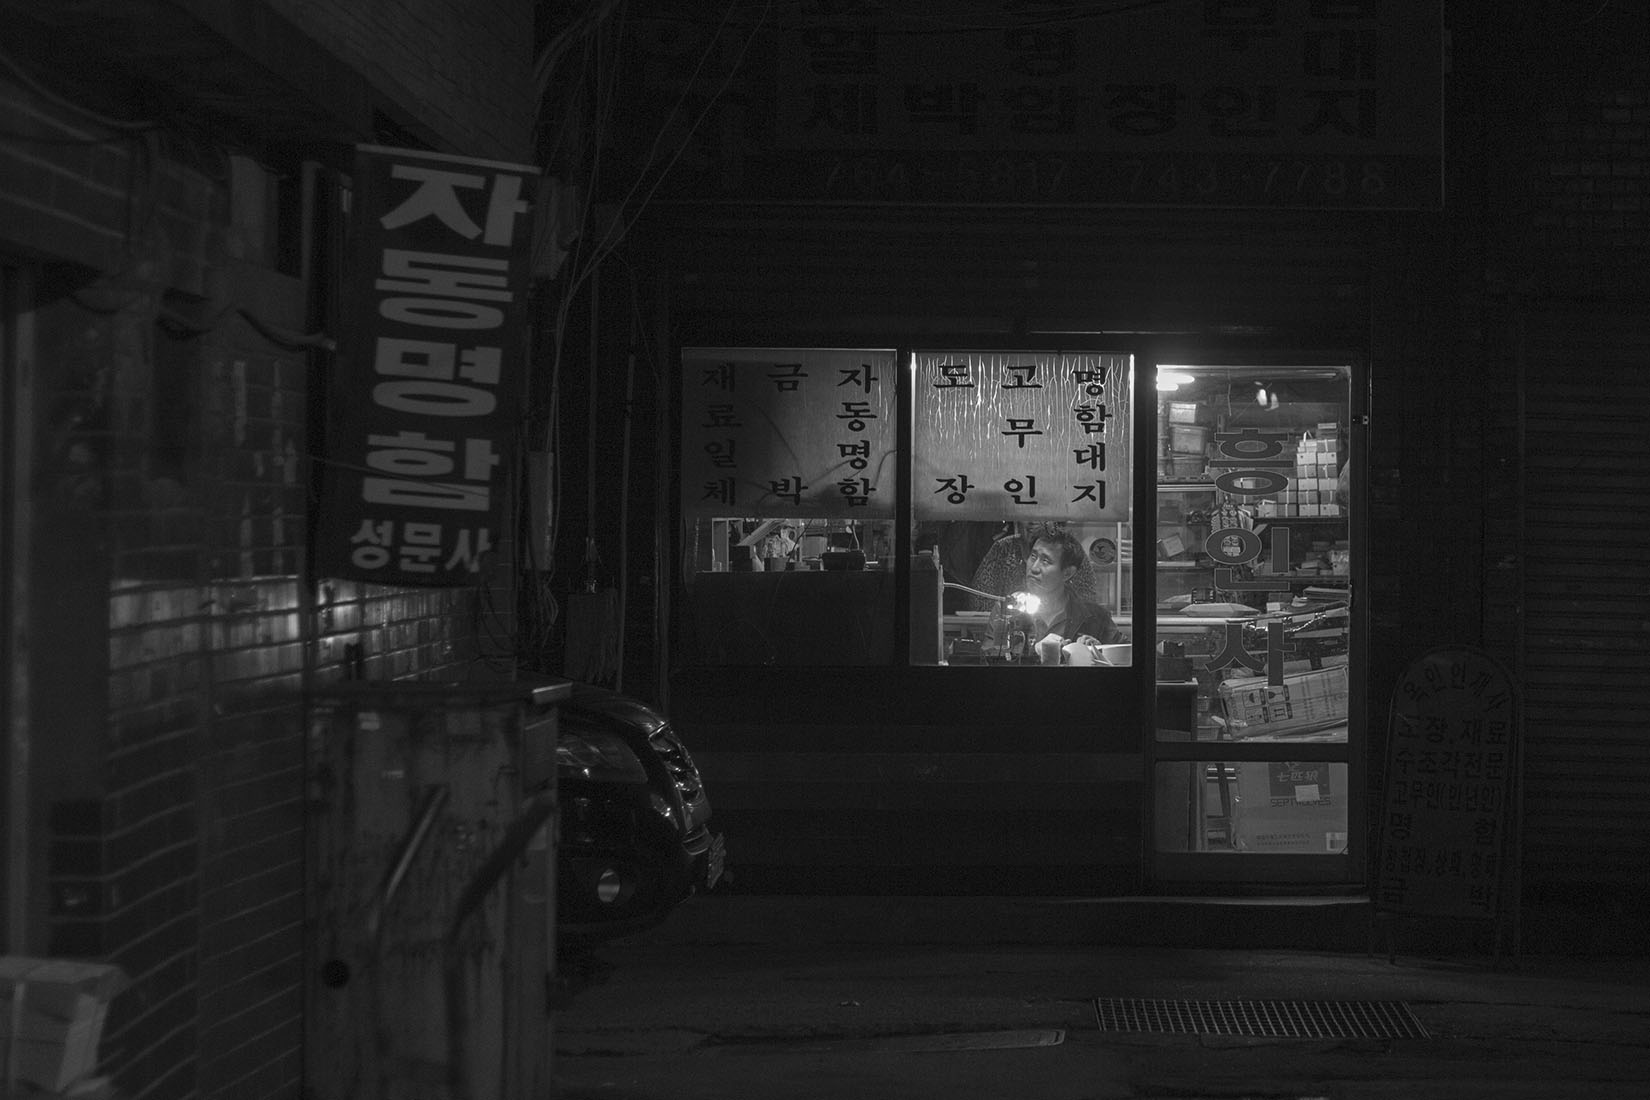 Séoul, atelier dans la nuit, typograhie hangul, homme dans la vitrine